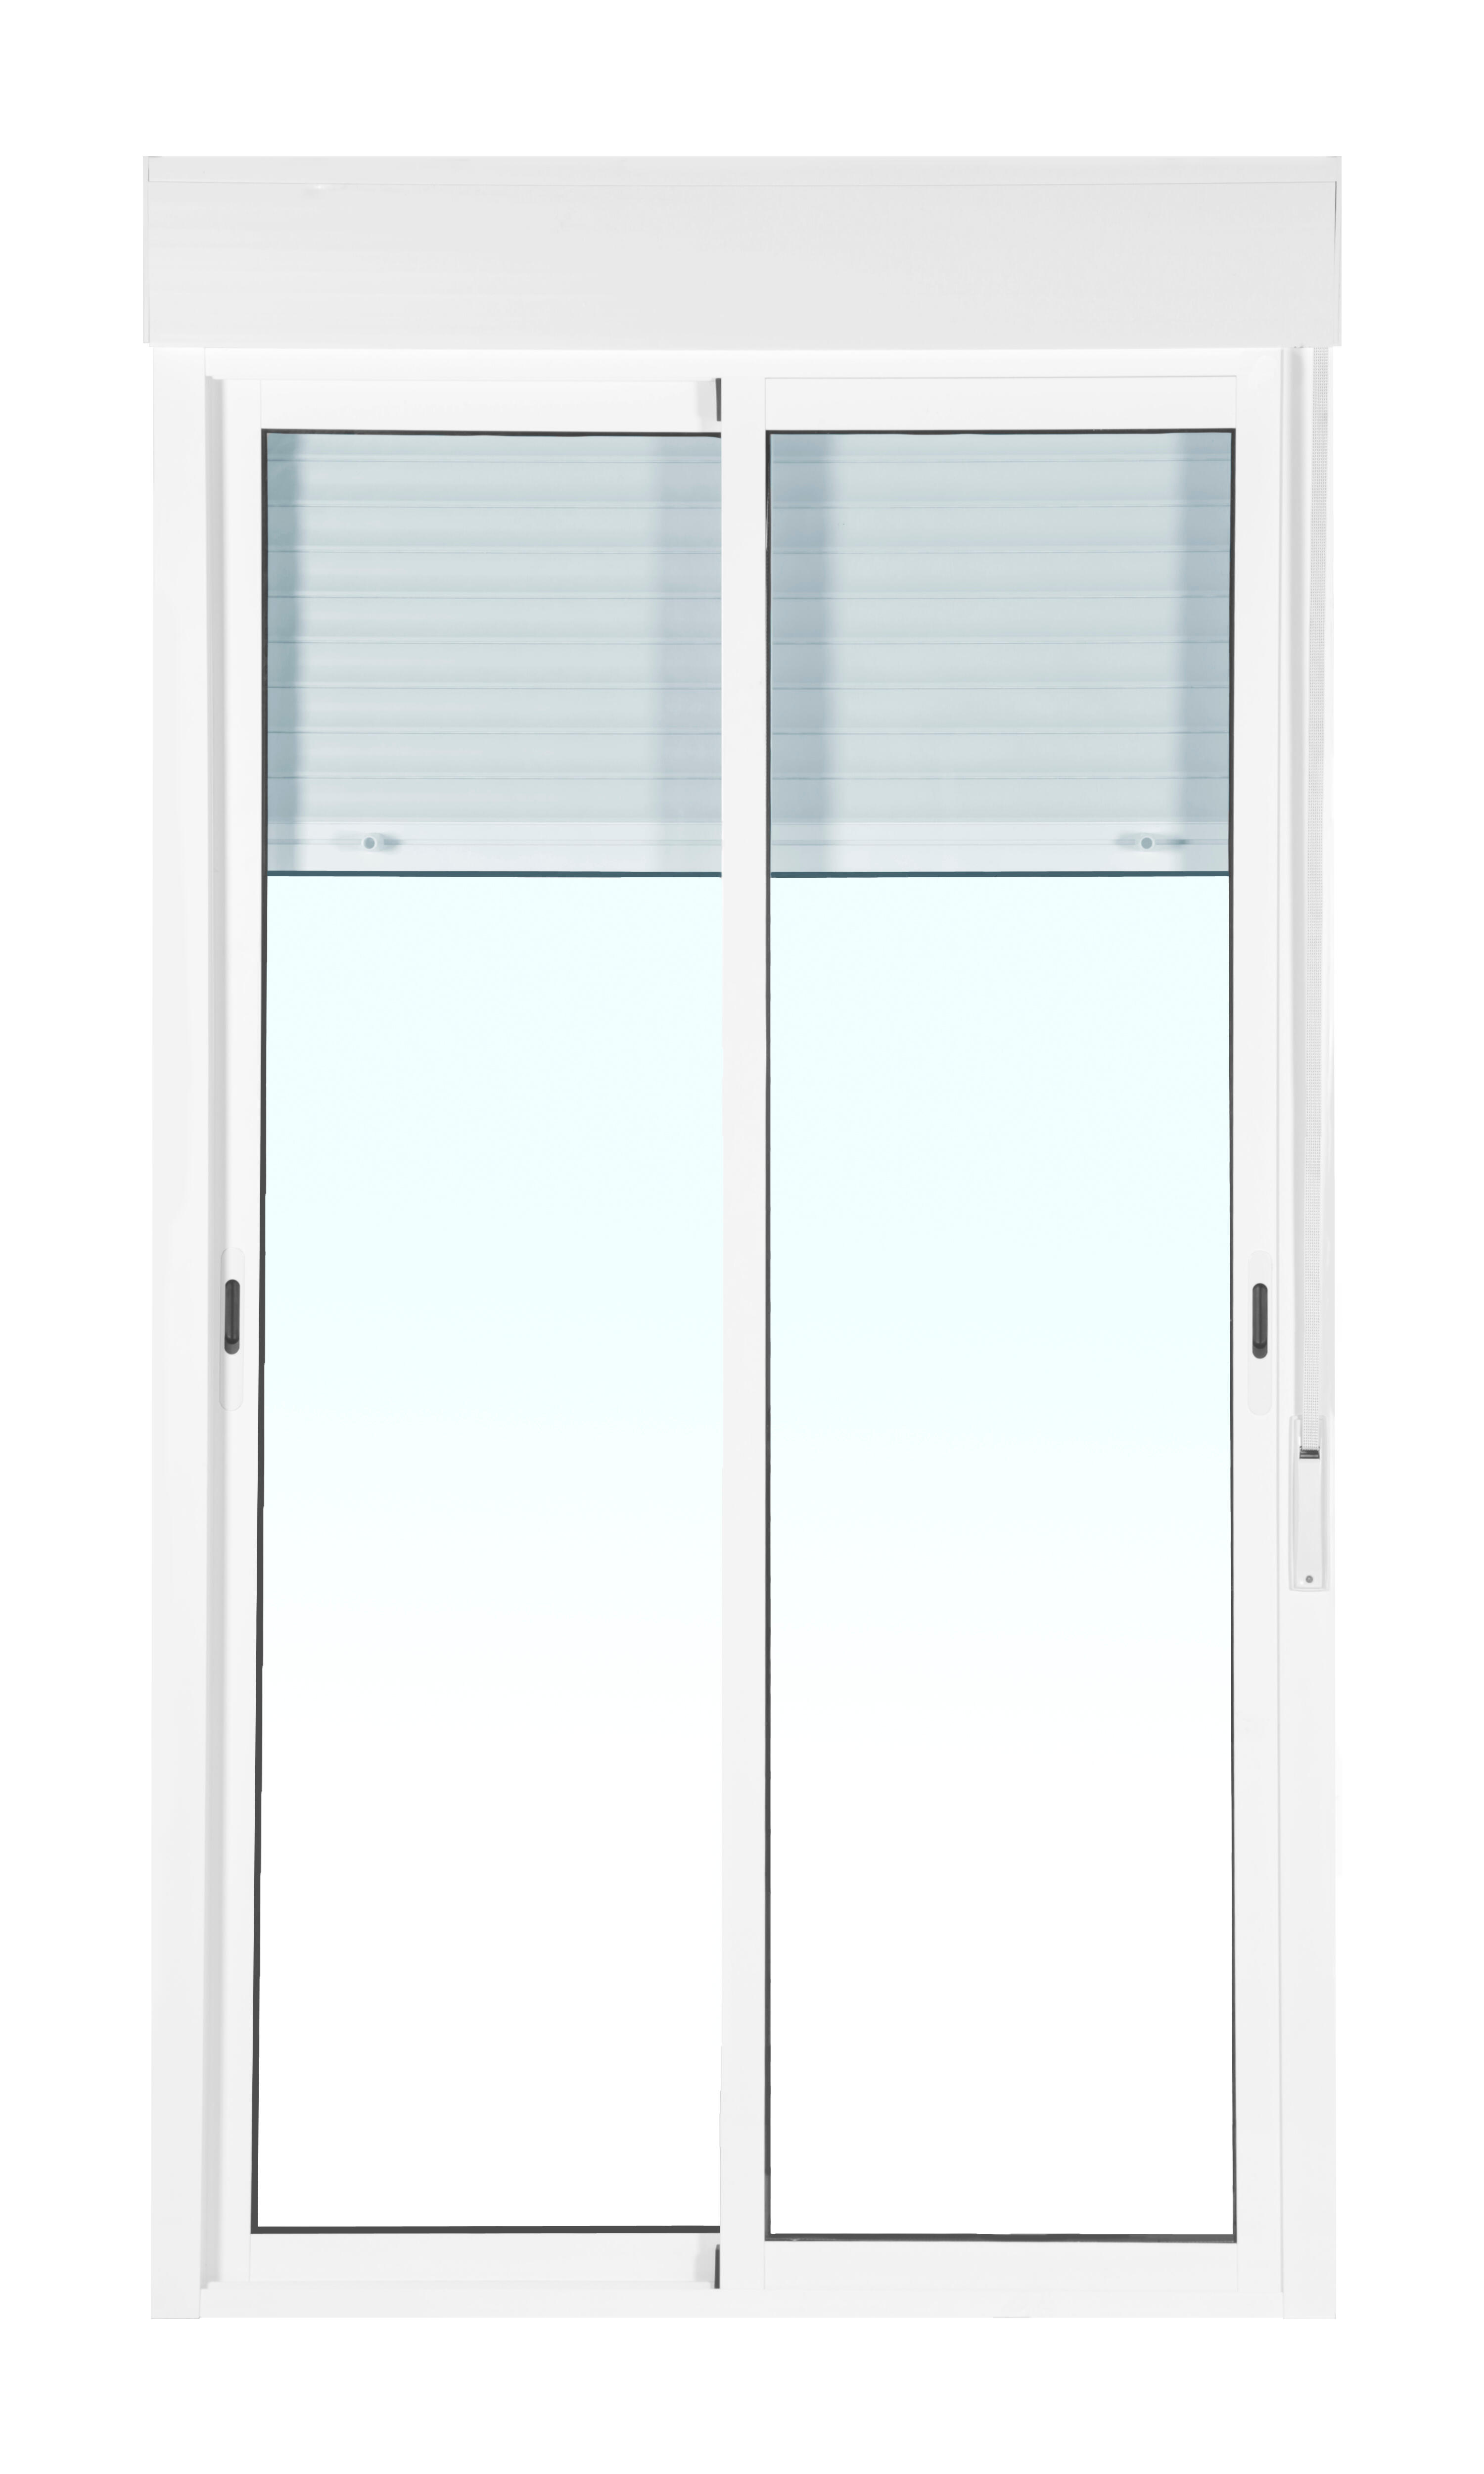 Balconera aluminio artens blanca corredera con persiana de 120x229 cm de la marca ARTENS